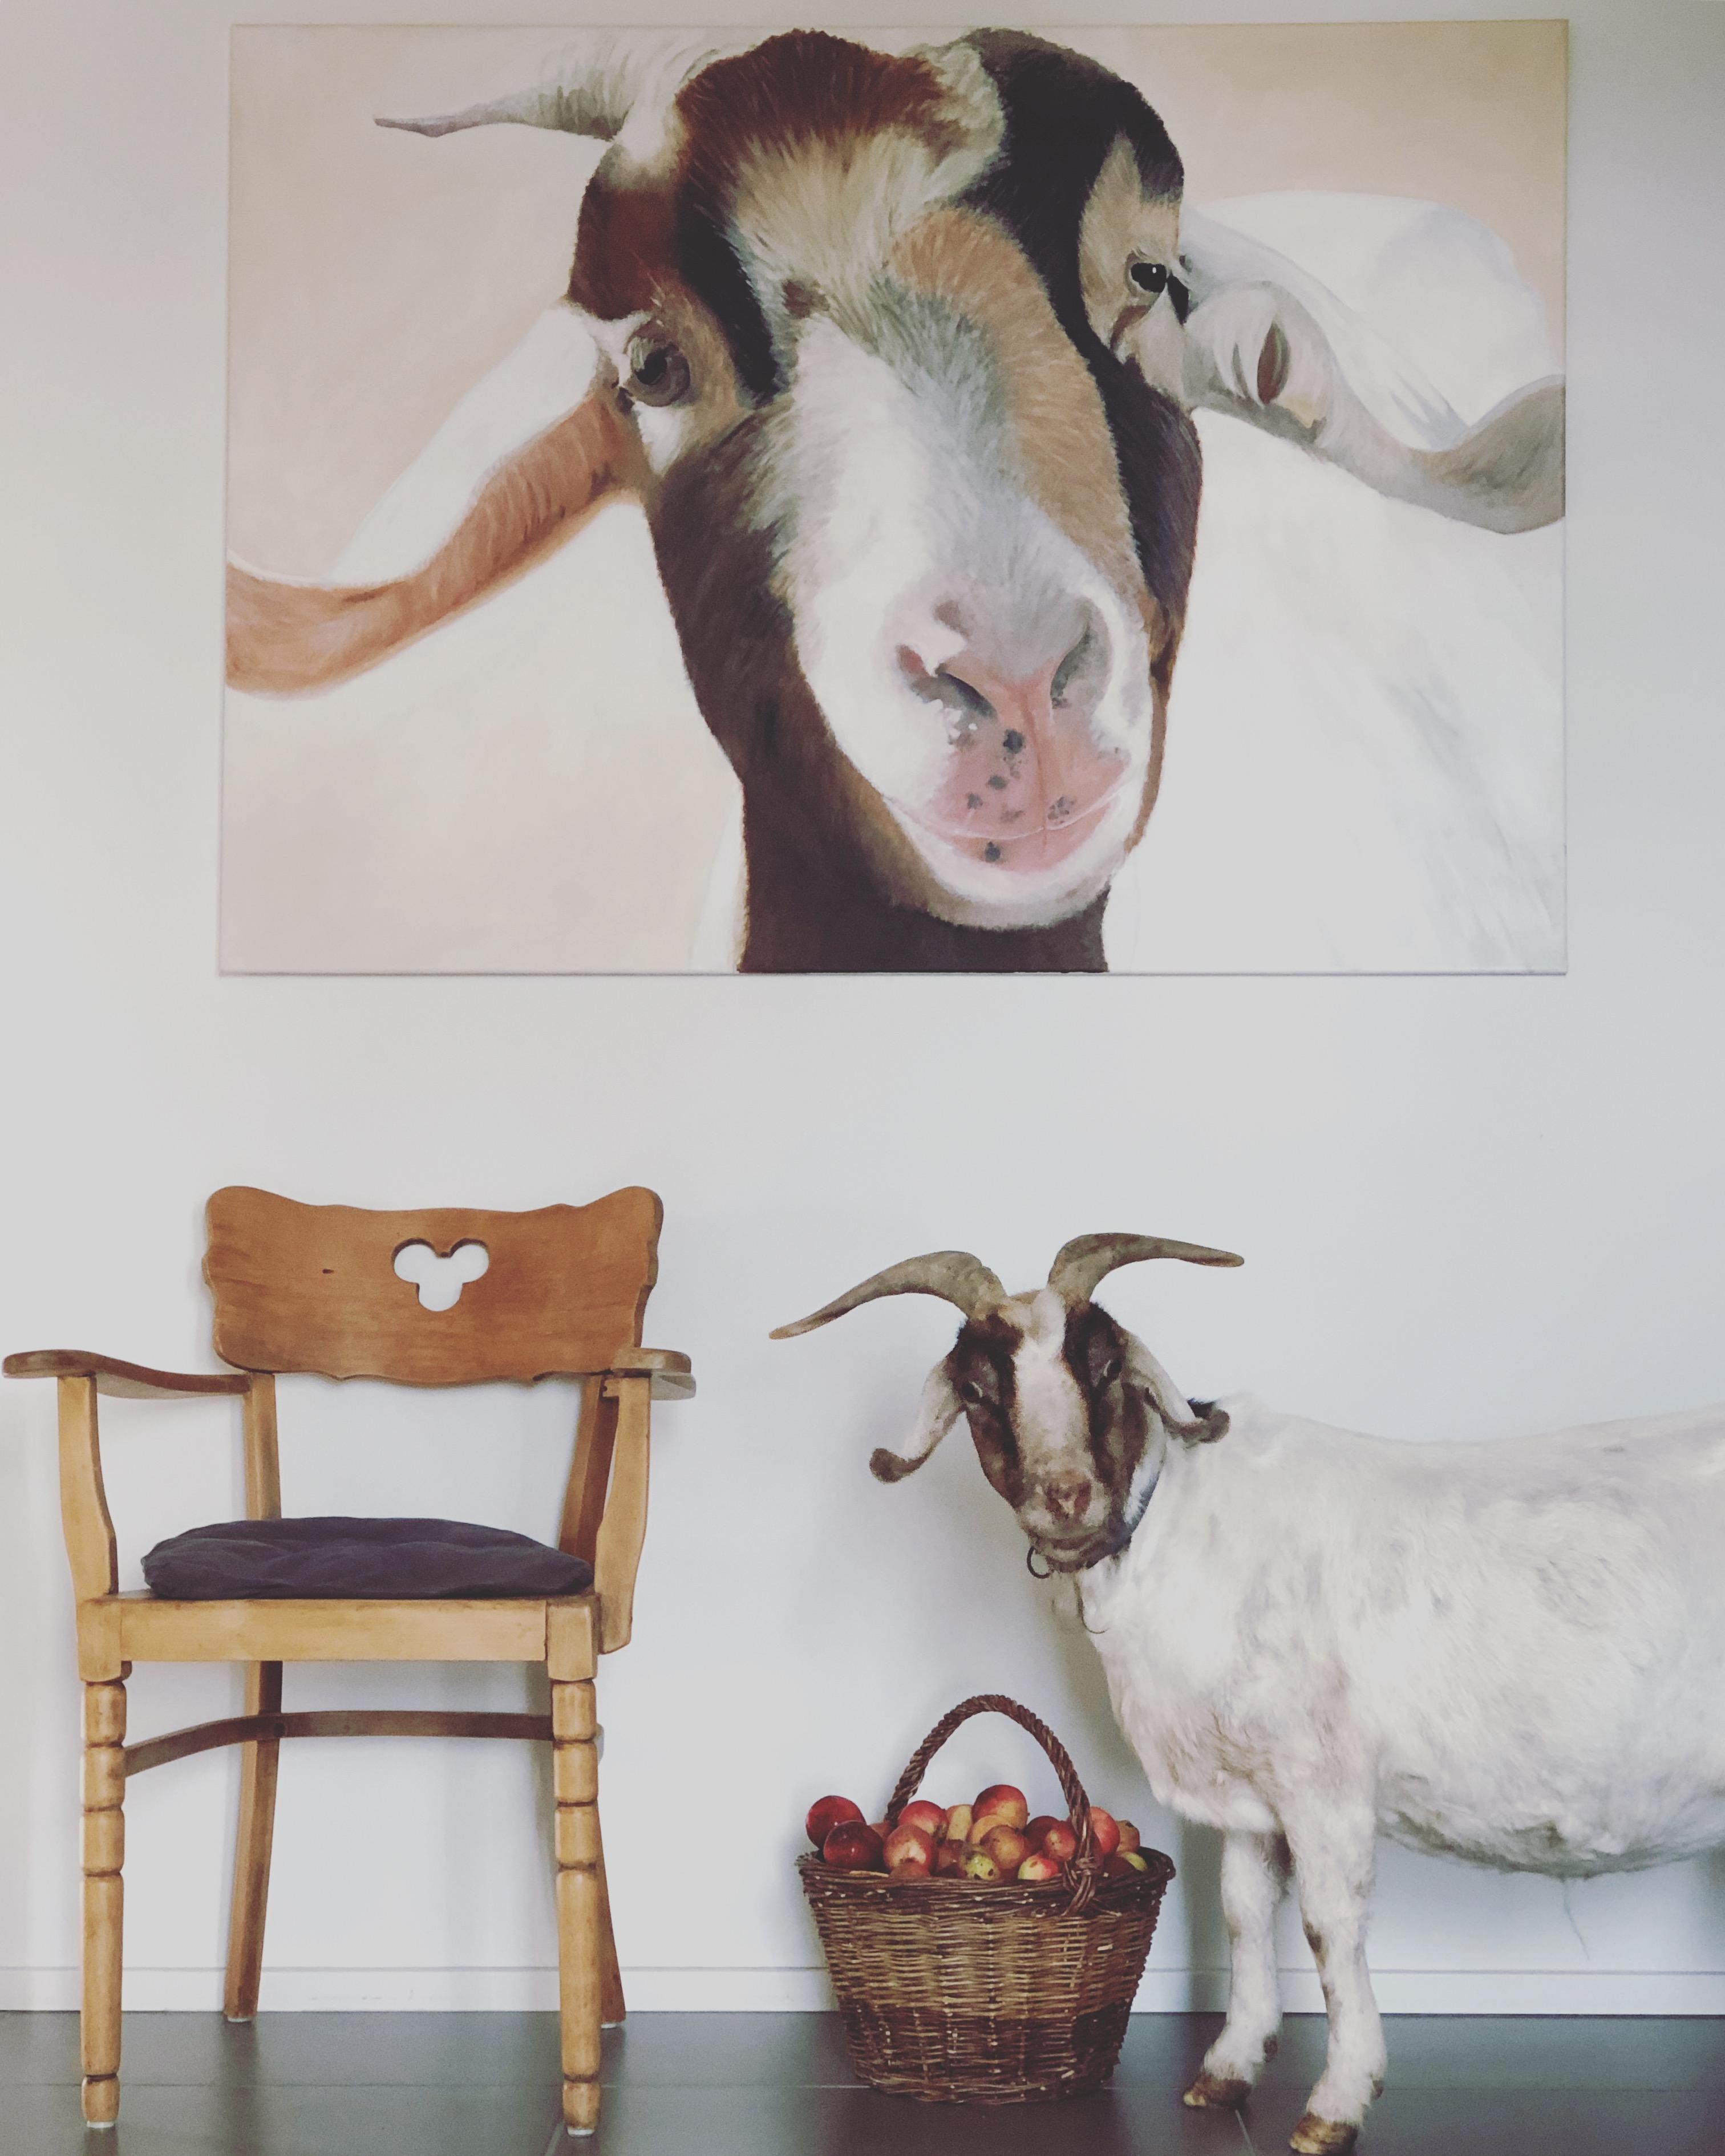 Mit Lisbeth fing alles an vor über 10 Jahren...große Ziegenliebe ❤️
#lisbeth #inthehouse #acrylaufleinwand #minimalismus